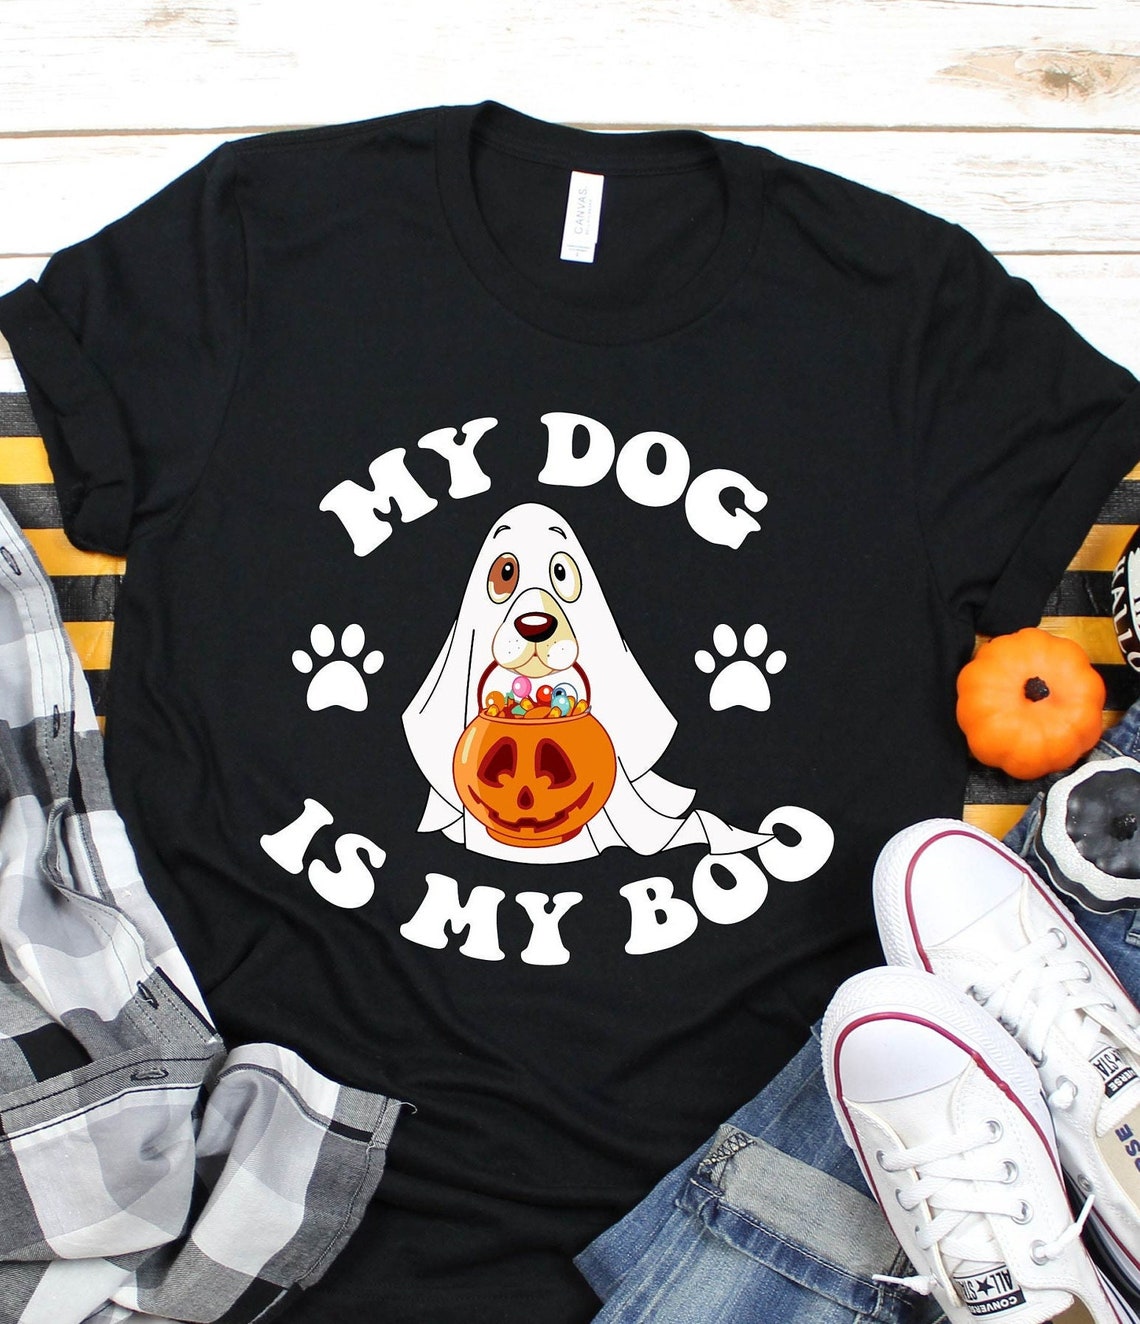 My Dog is My Boo Halloween Shirt, Cute Halloween Shirt, Spooky Dog Tee, Spooky Pumpkin Tee, Ghost Dog Shirt, Dog Mom Shirt,Halloween Dog Tee